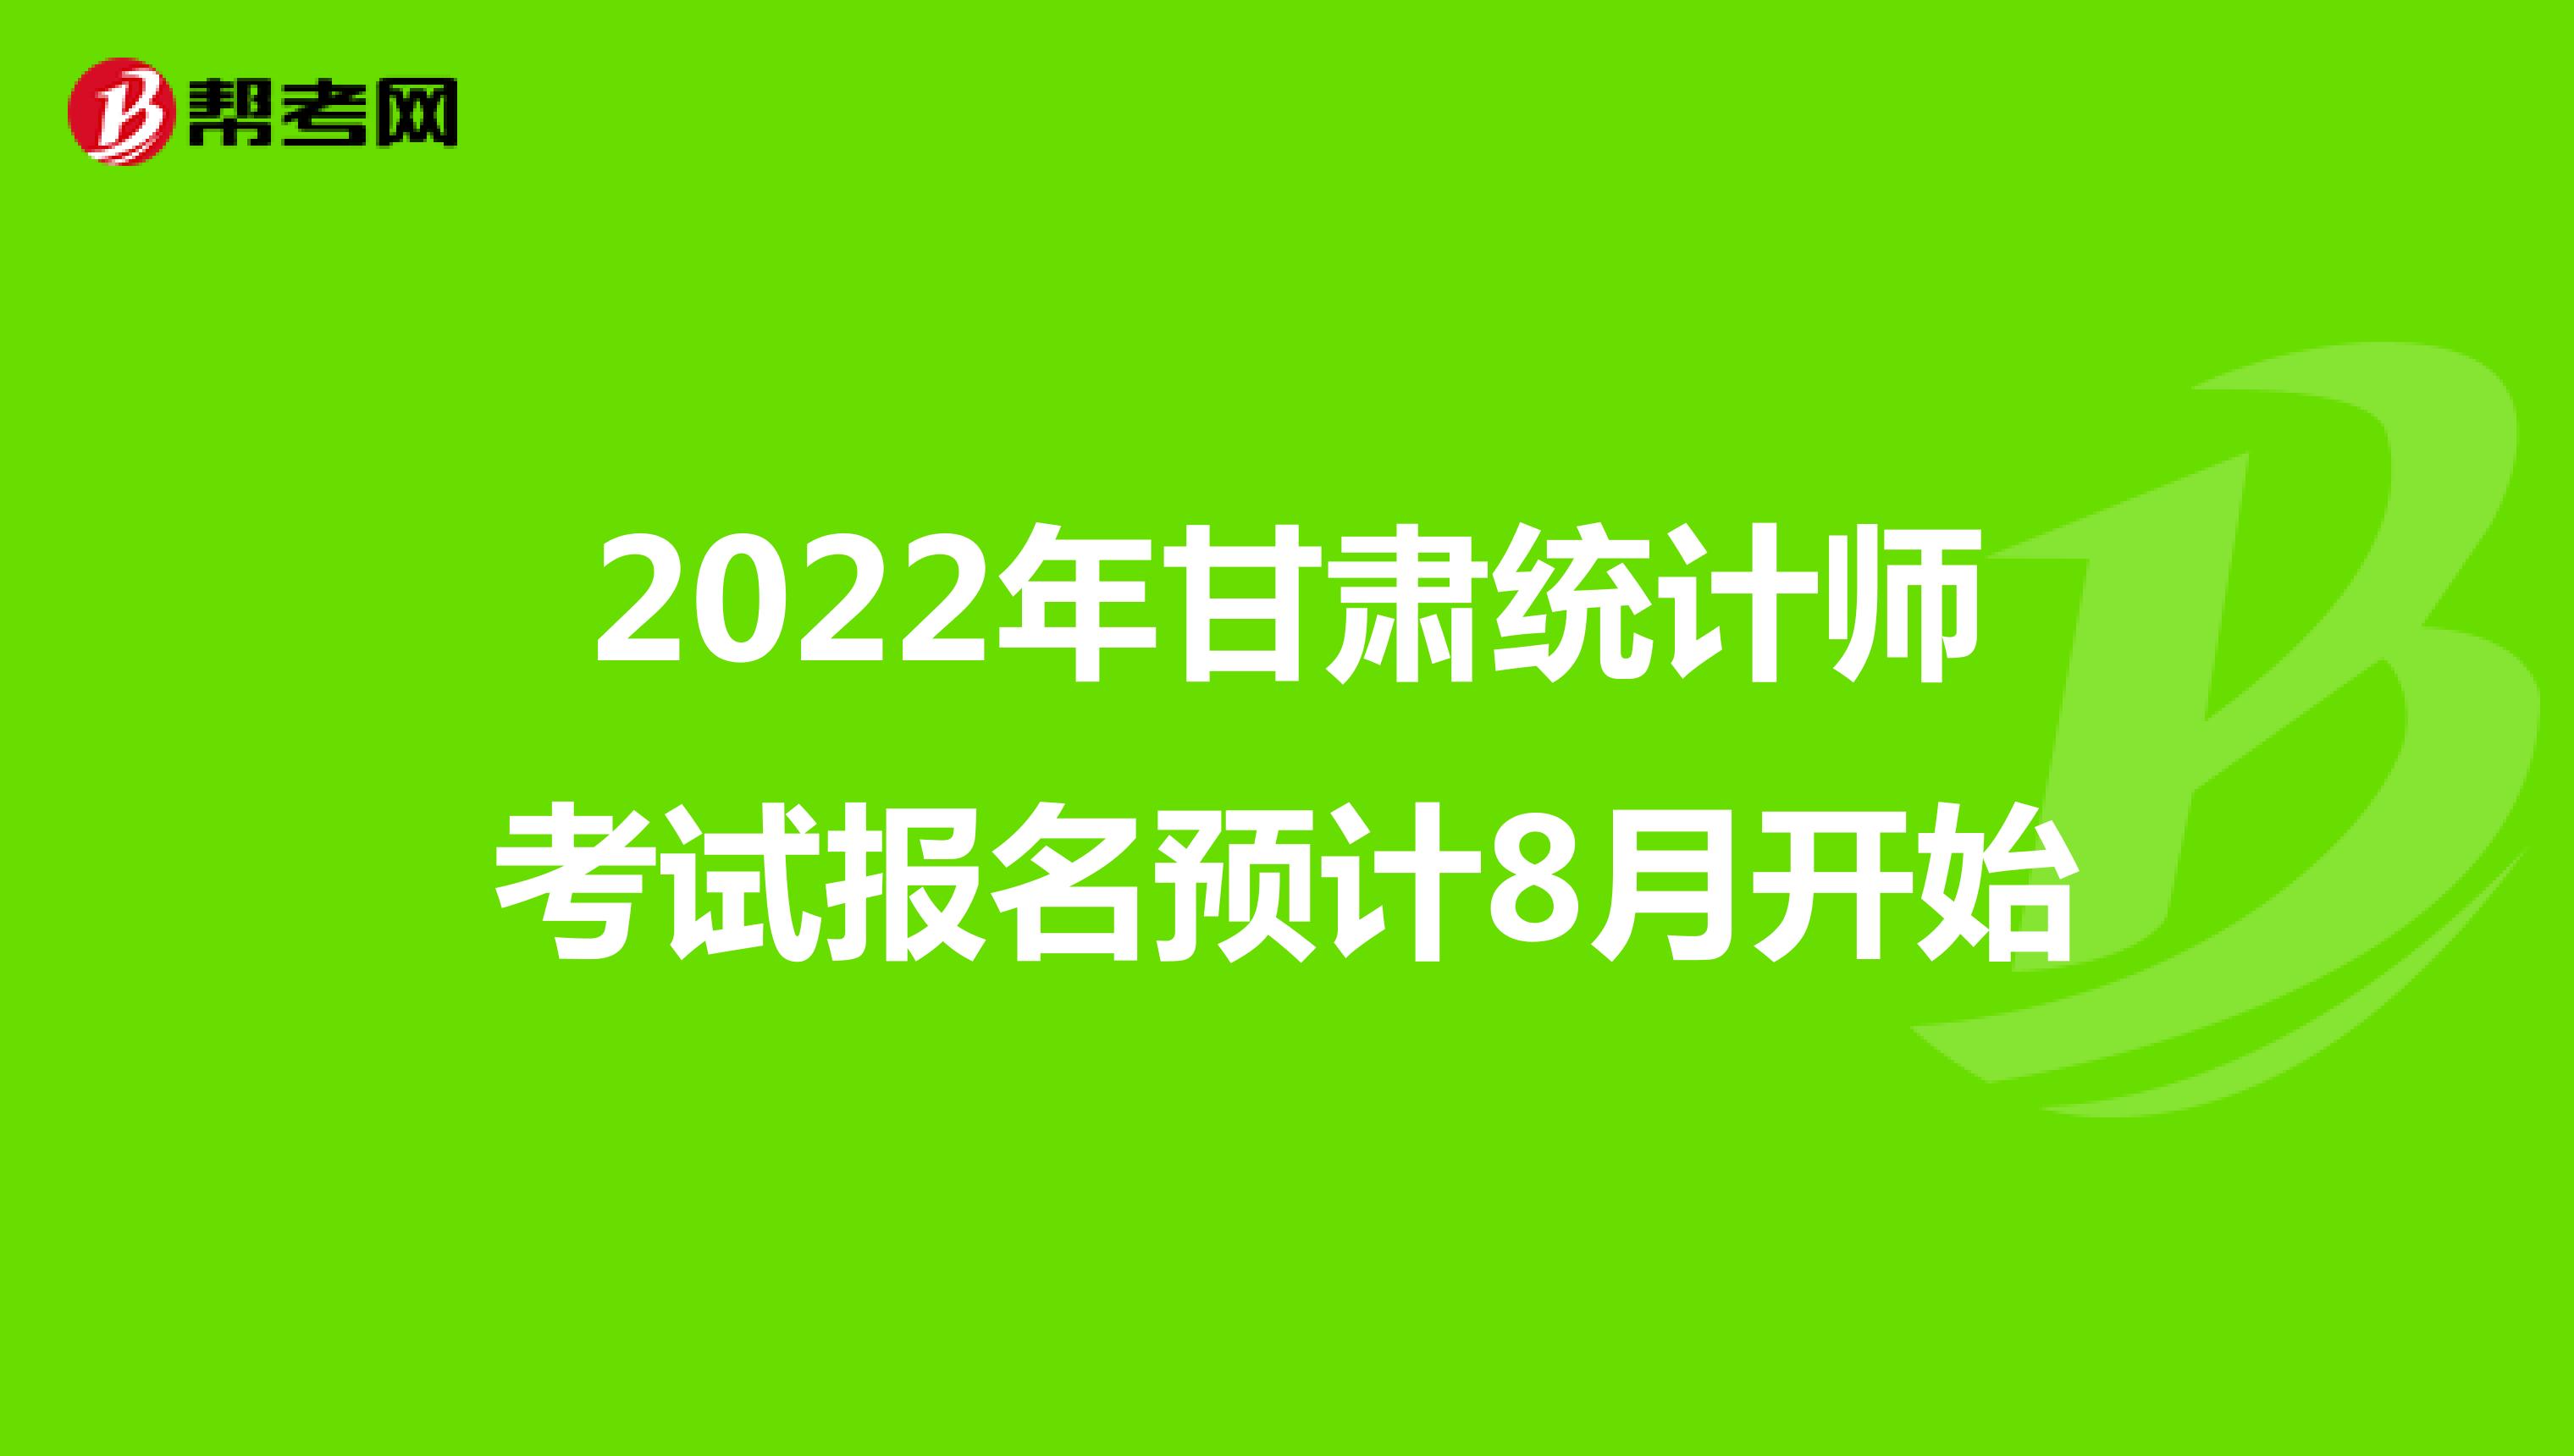 2022年甘肃统计师考试报名预计8月开始